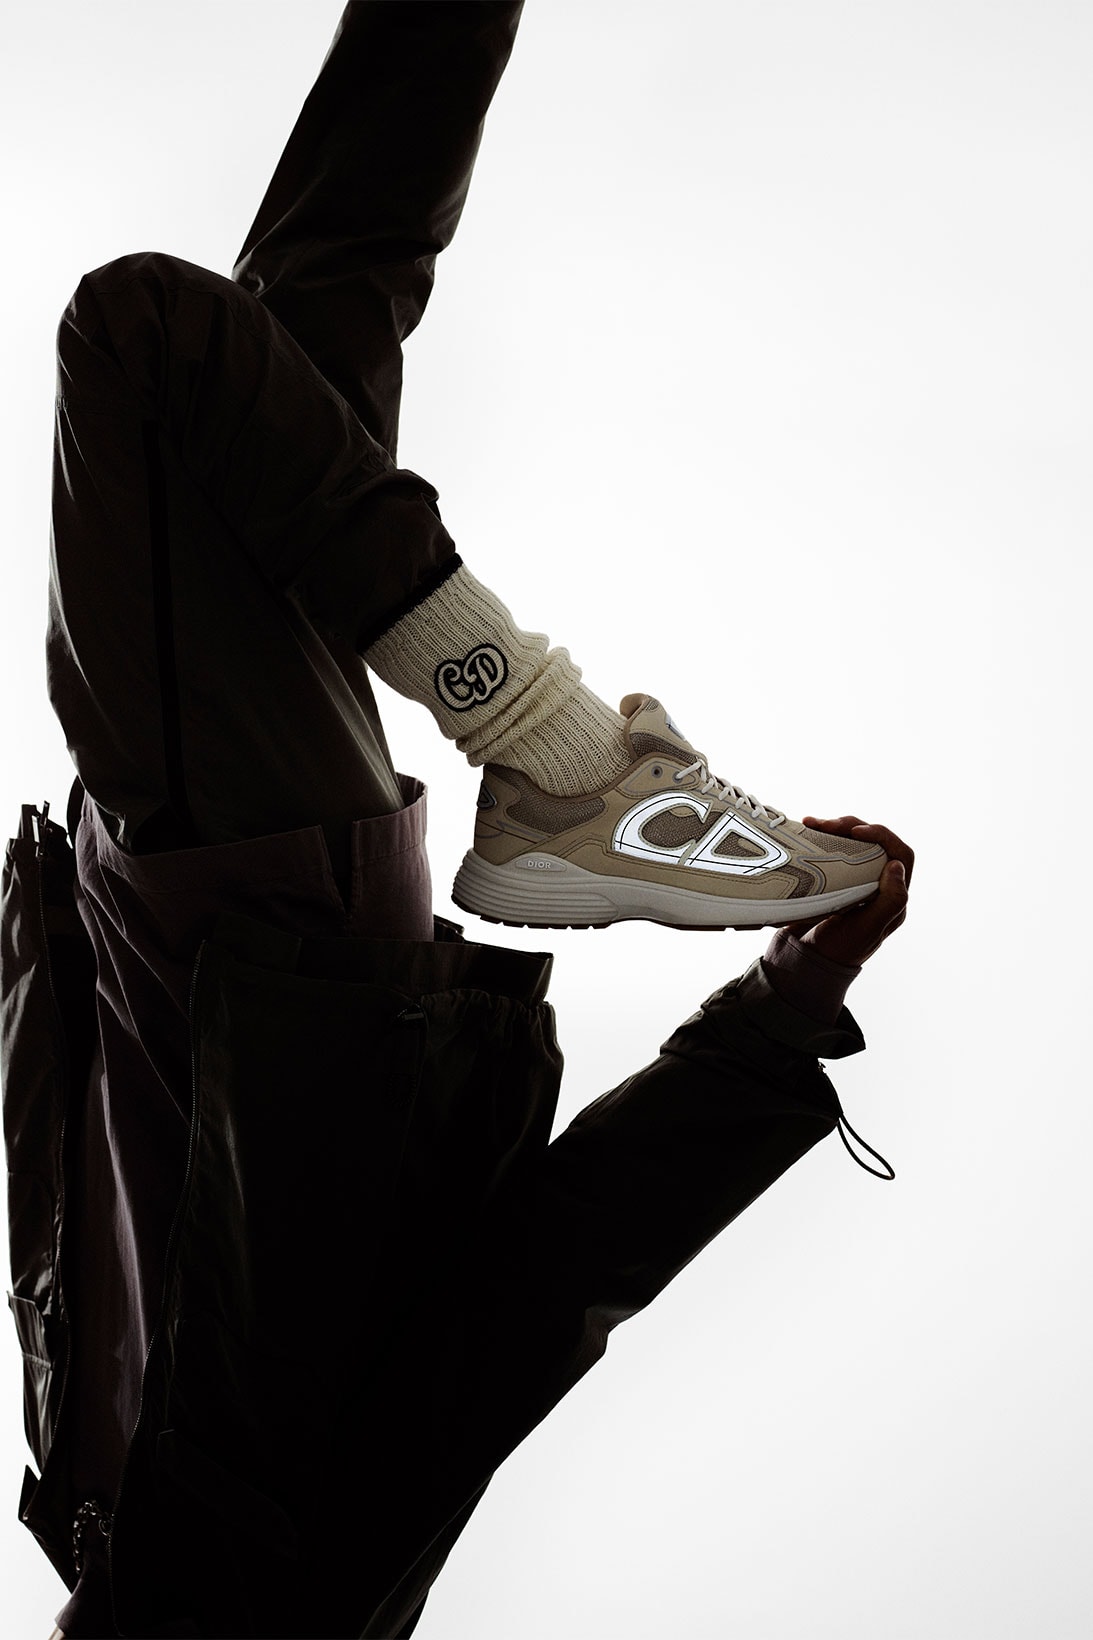 B57 Sneakers - Shoes - Men's Fashion